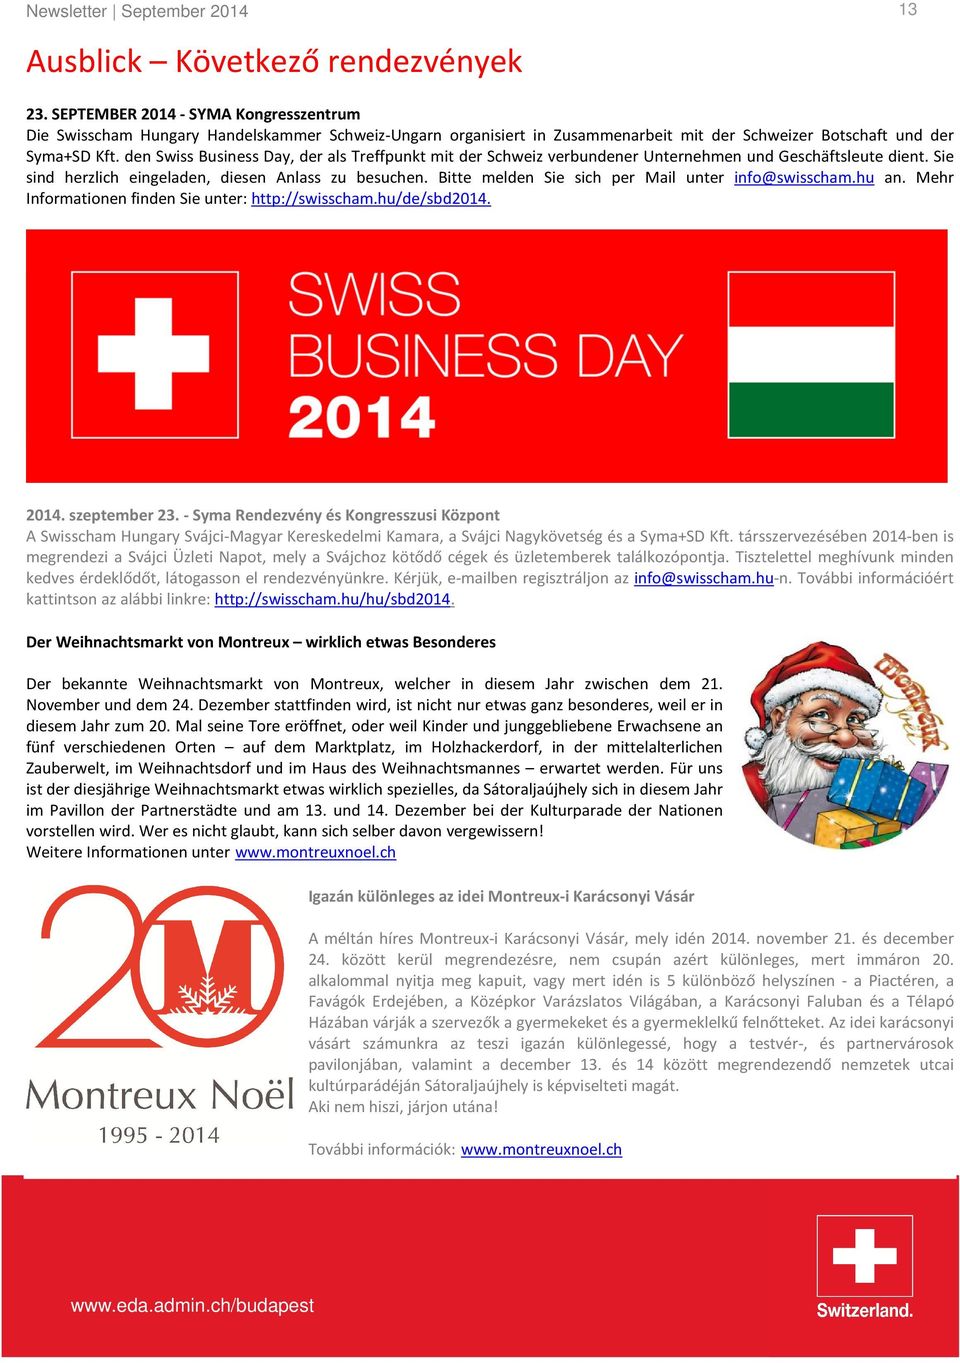 den Swiss Business Day, der als Treffpunkt mit der Schweiz verbundener Unternehmen und Geschäftsleute dient. Sie sind herzlich eingeladen, diesen Anlass zu besuchen.